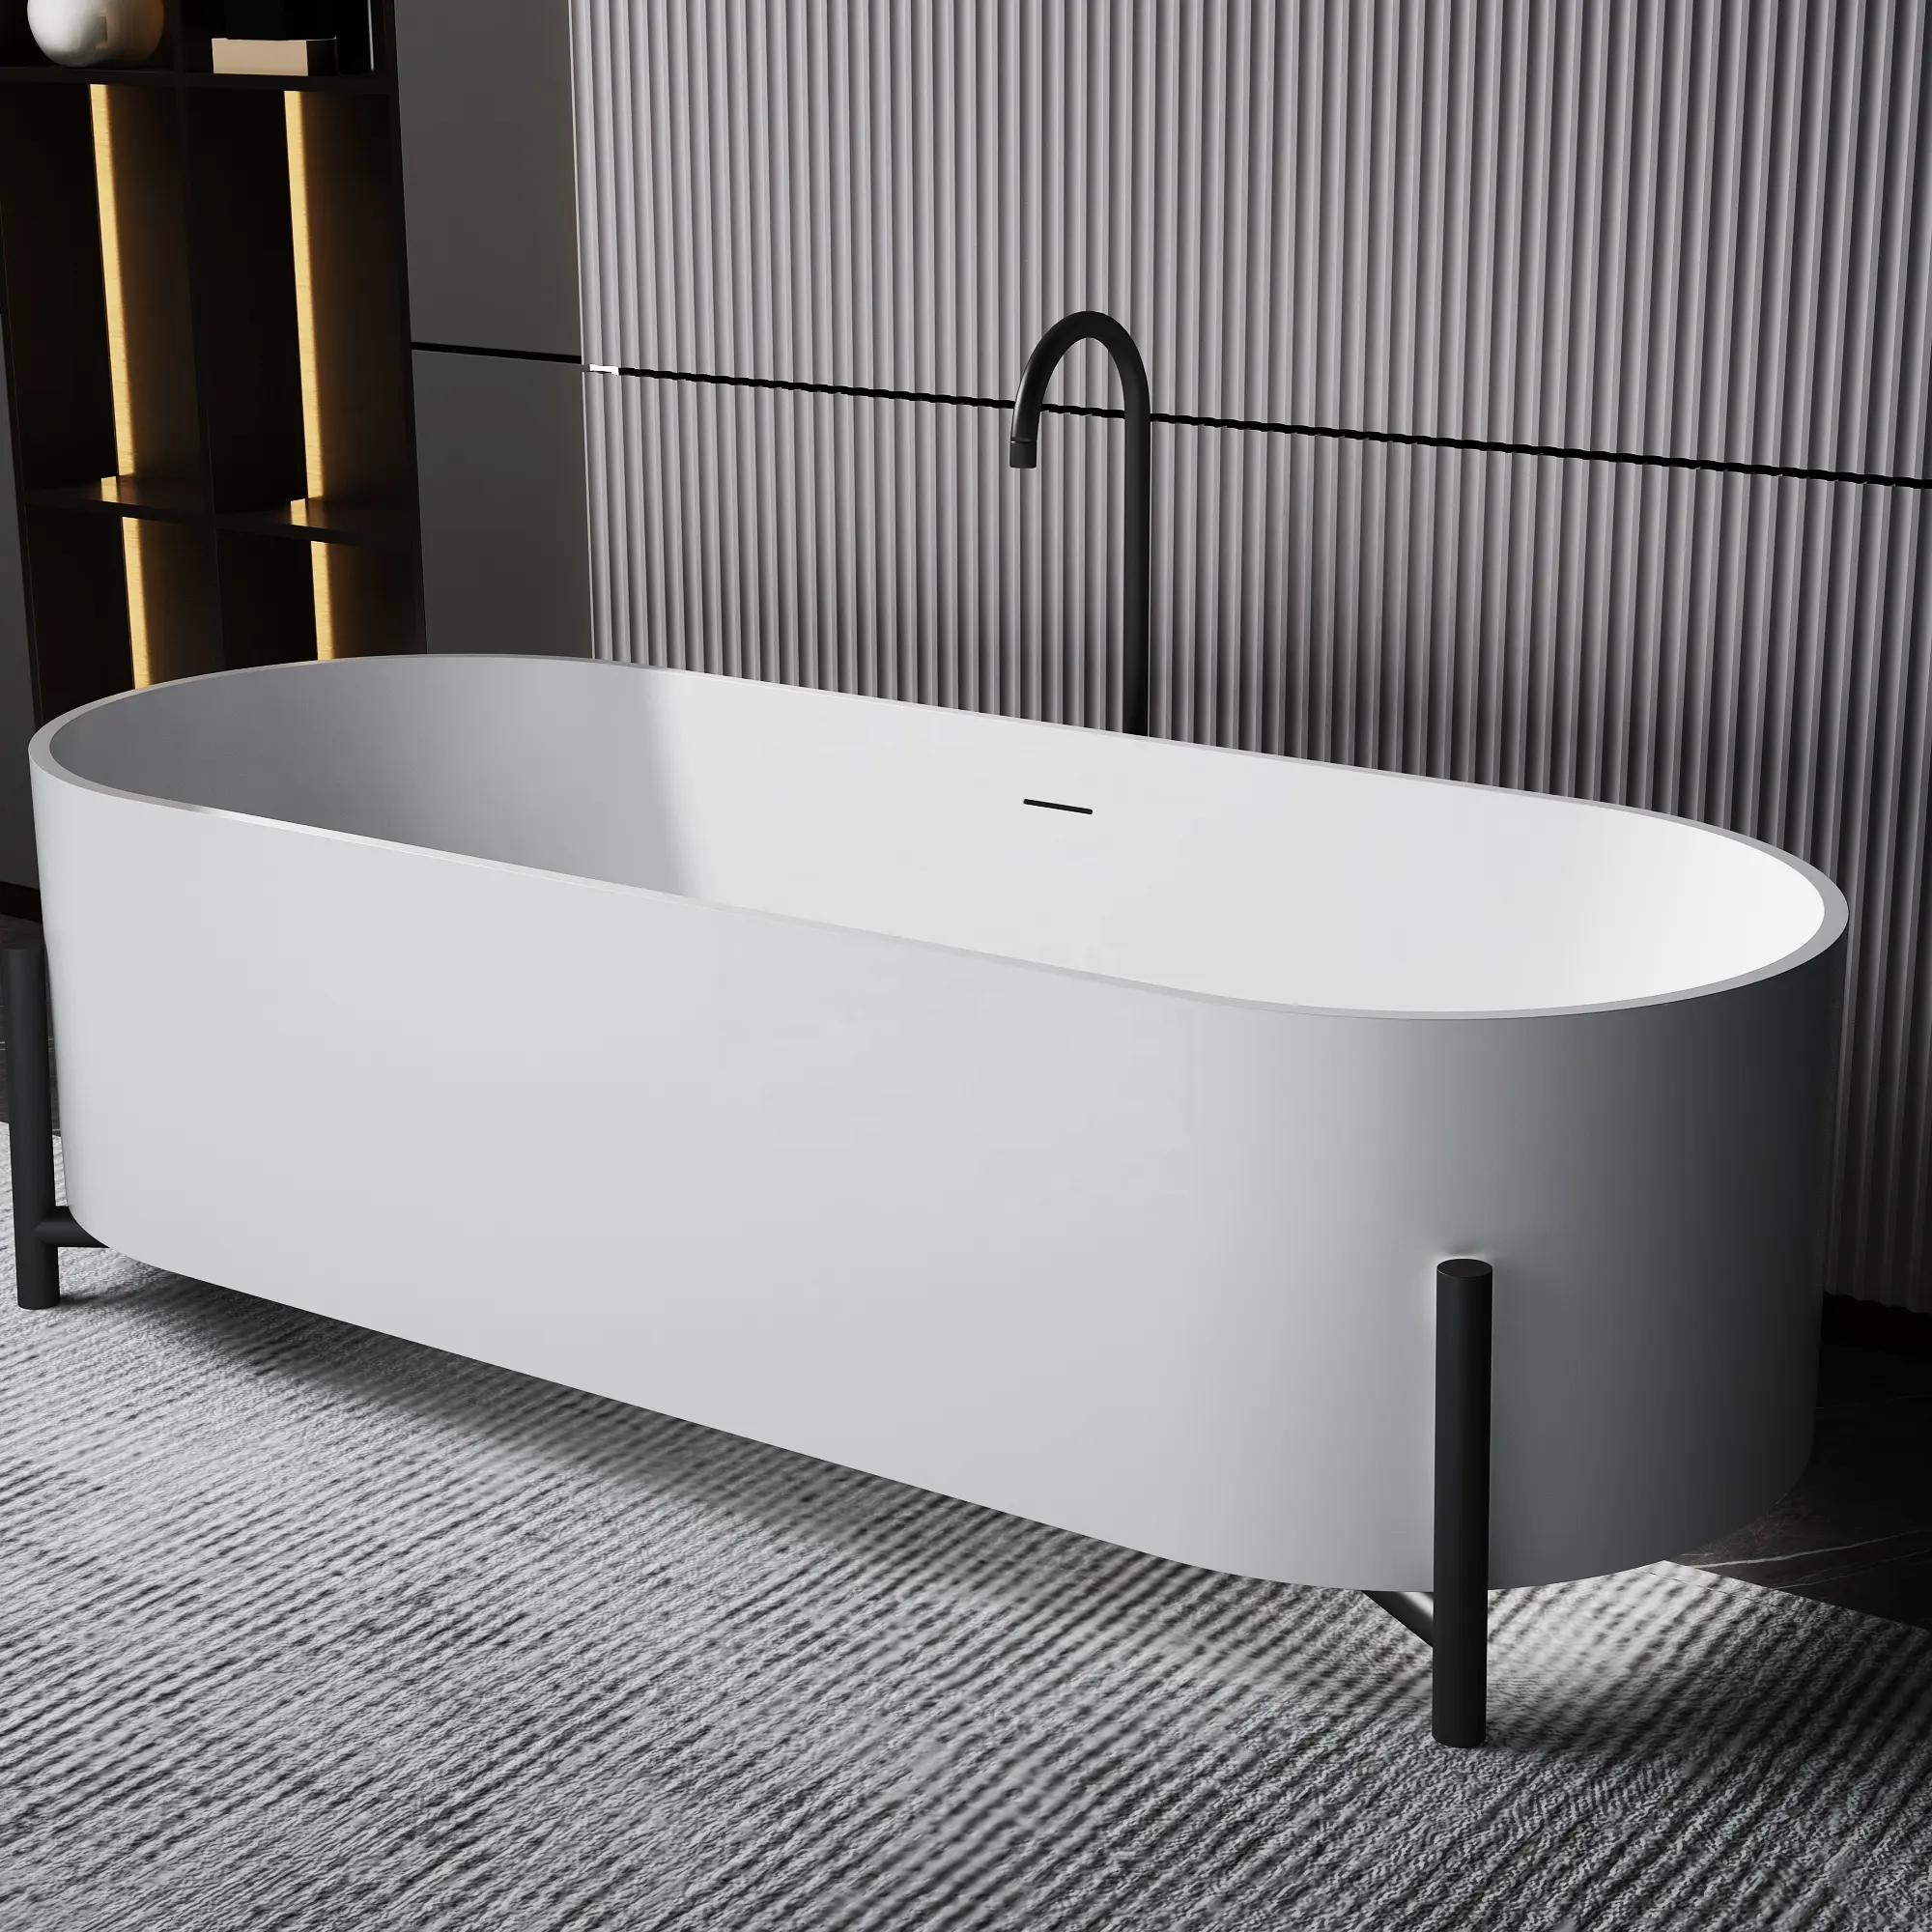 Bañera moderna para adultos 2023 más nueva bañera de superficie sólida interior independiente acrílico lujo blanco baño Gua 3 años centro